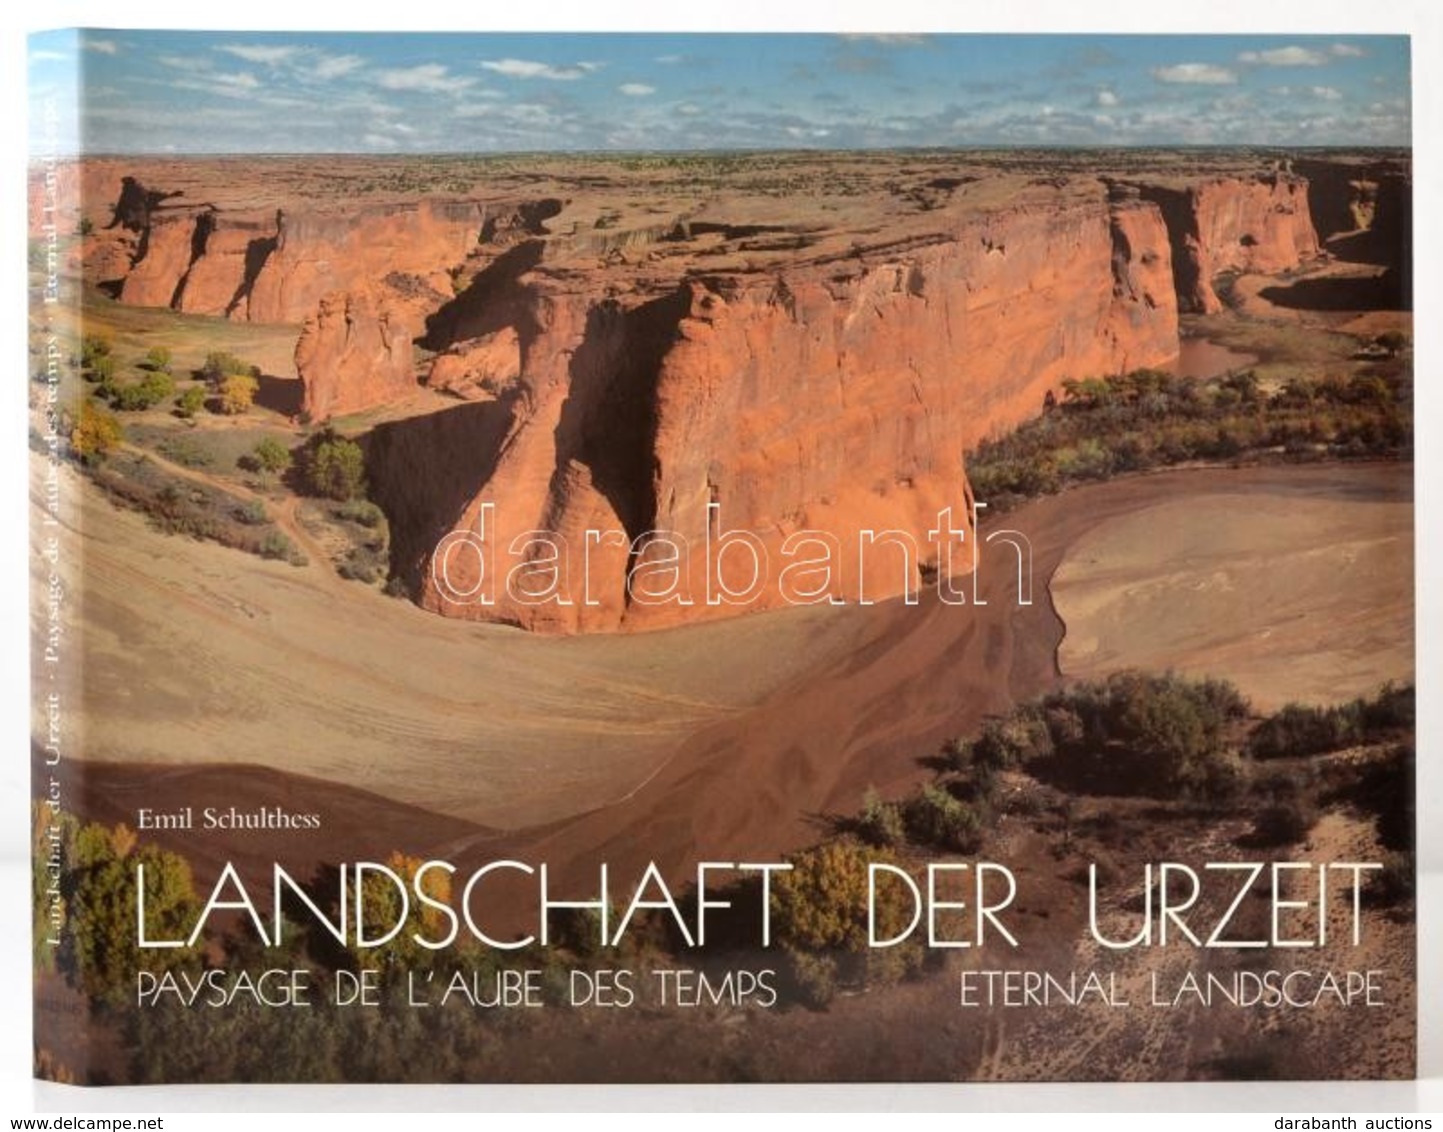 Emil Schulthess-Sigmund Widmer: Landschaft Der Urzeit. Paysage De L'Aube Des Temps. Eternal Landscape. Zürich, 1989, Art - Non Classificati